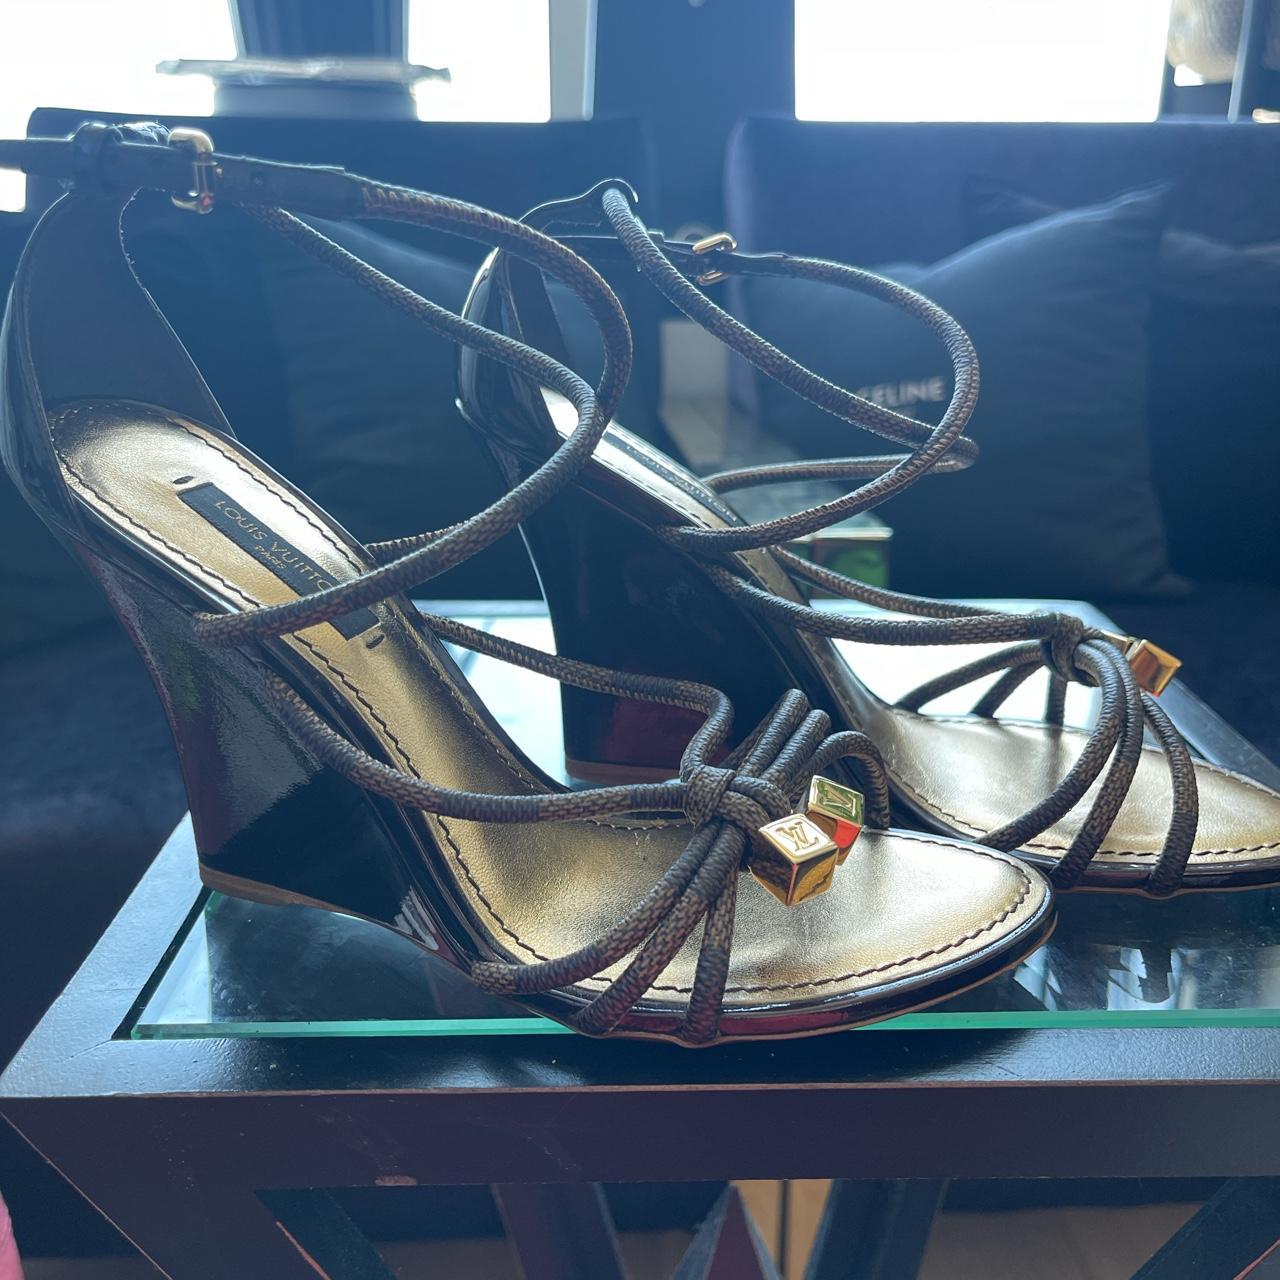 Louis Vuitton women's sandal. AUTHENTIC. SIZE 6.5. - Depop